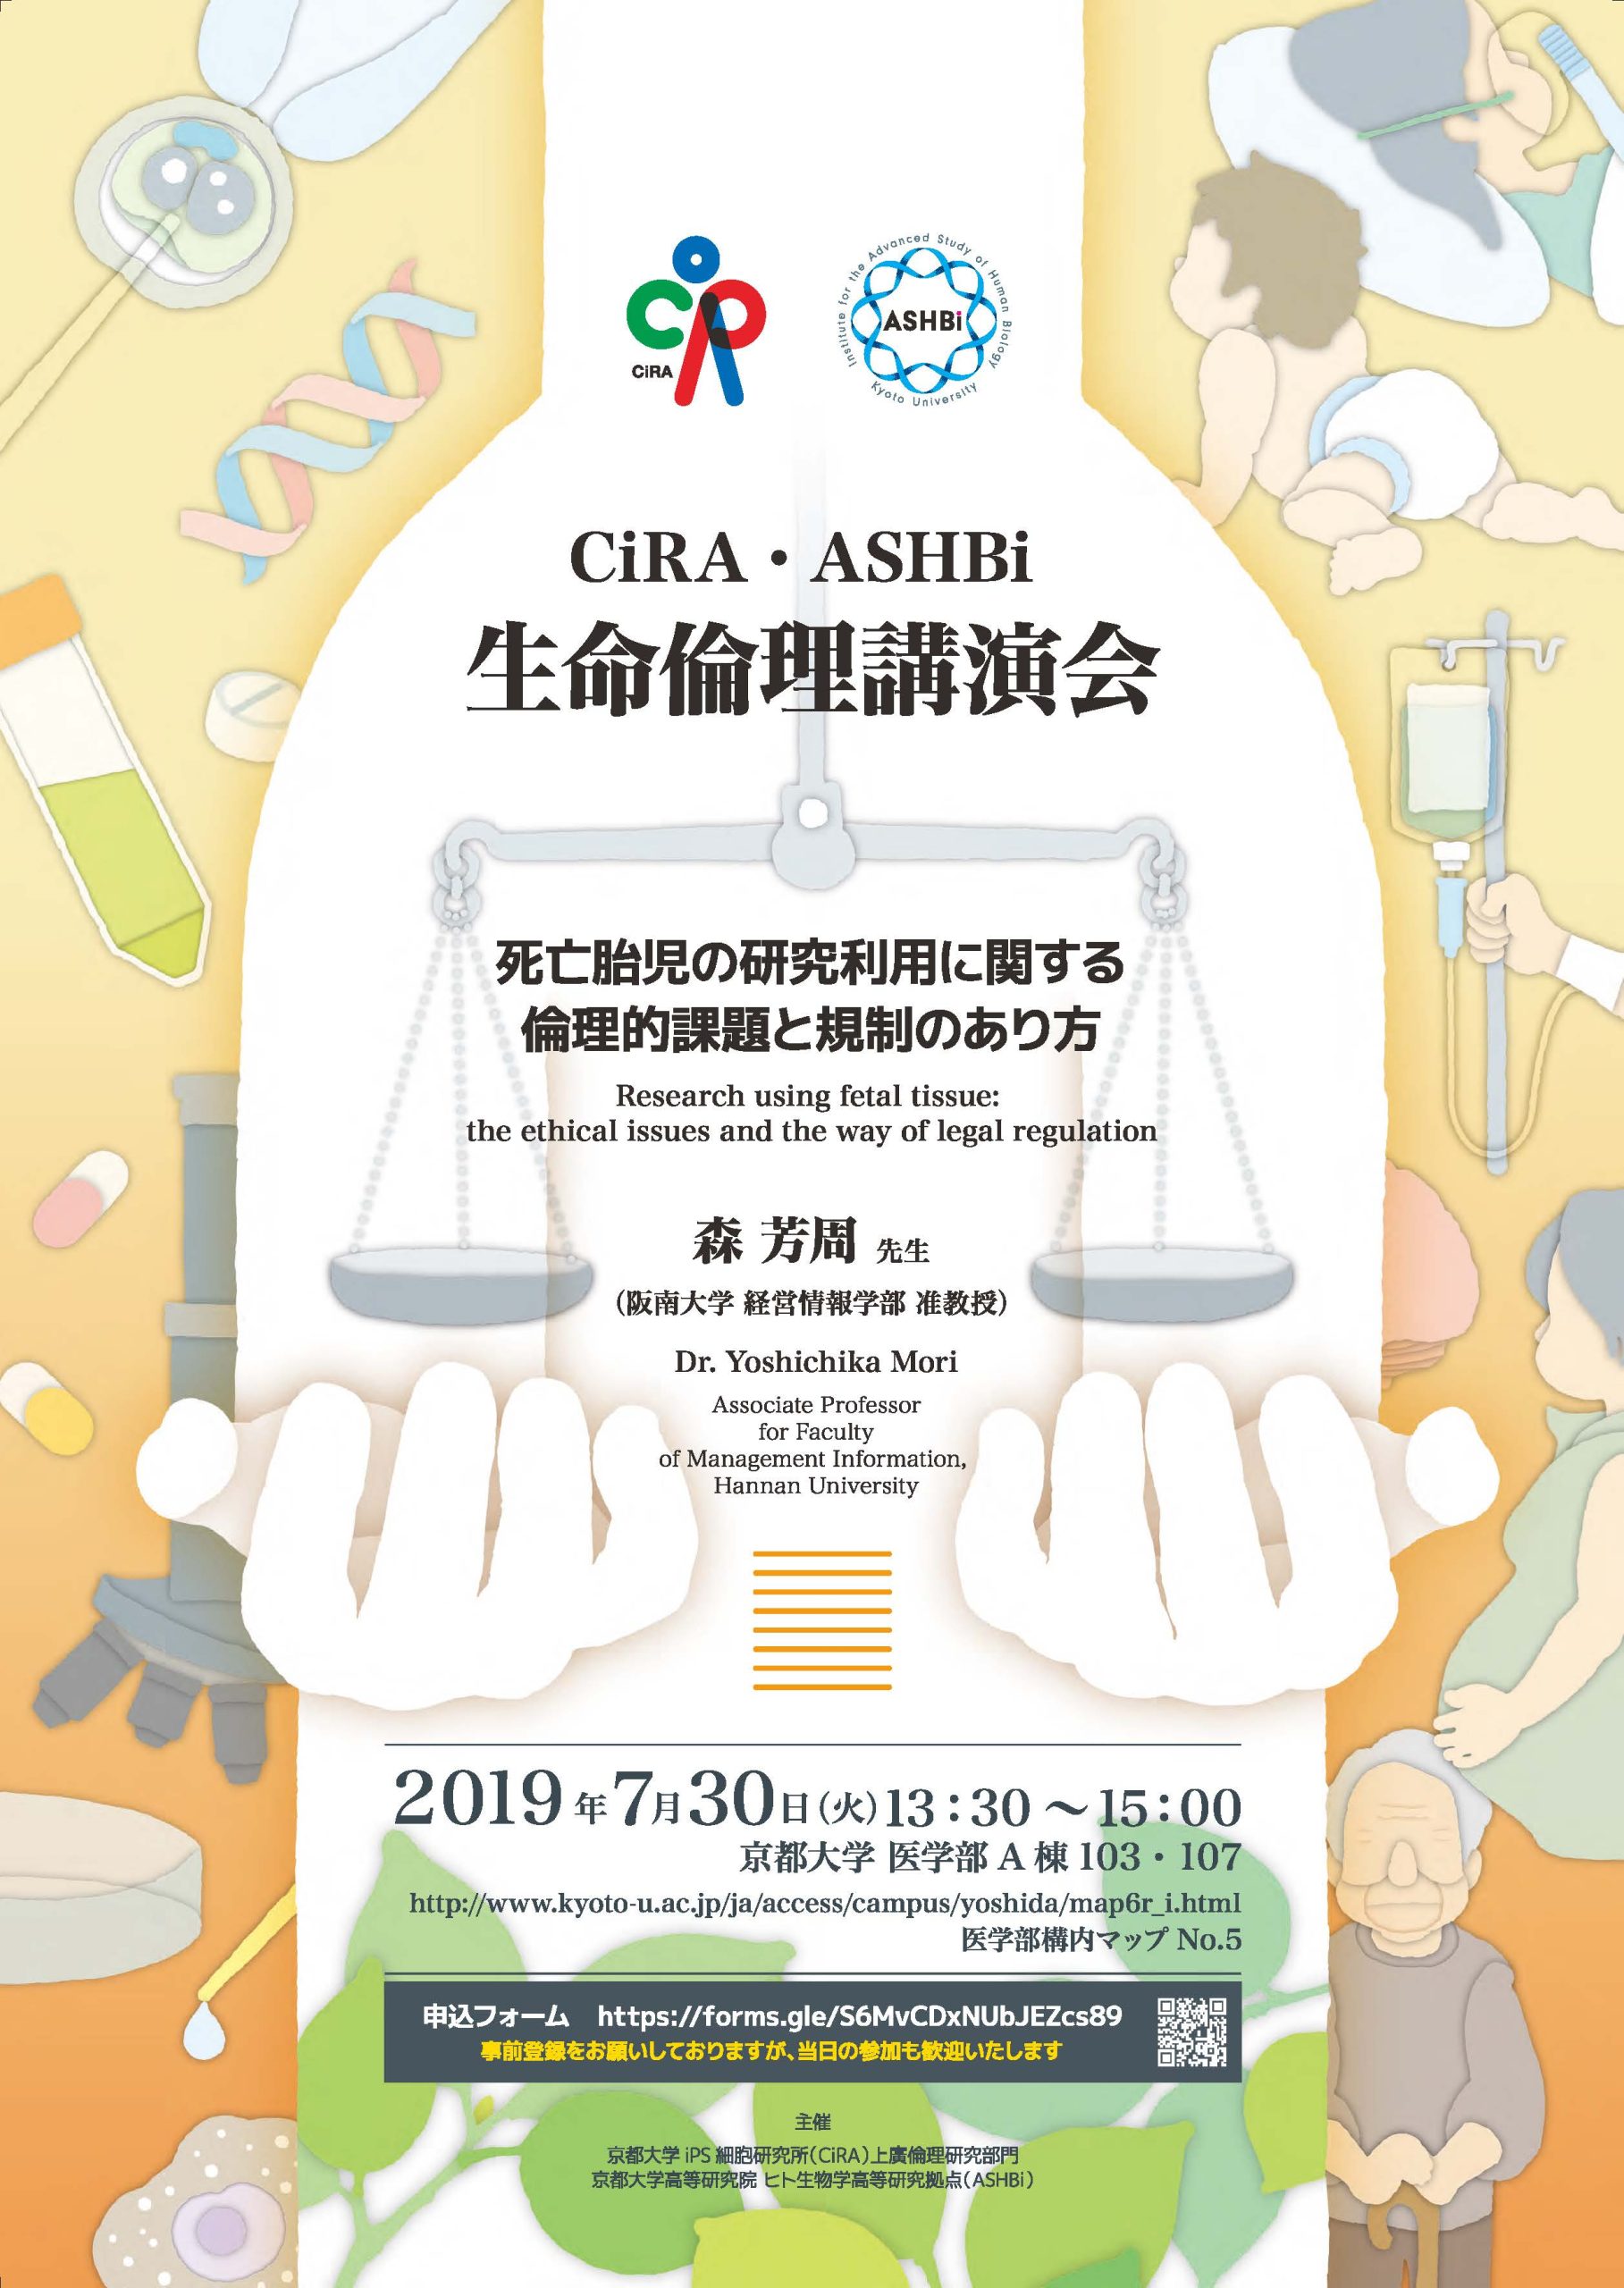 CiRA・ASHBi 生命倫理講演会『死亡胎児の研究利用に関する倫理的課題と規制のあり方』